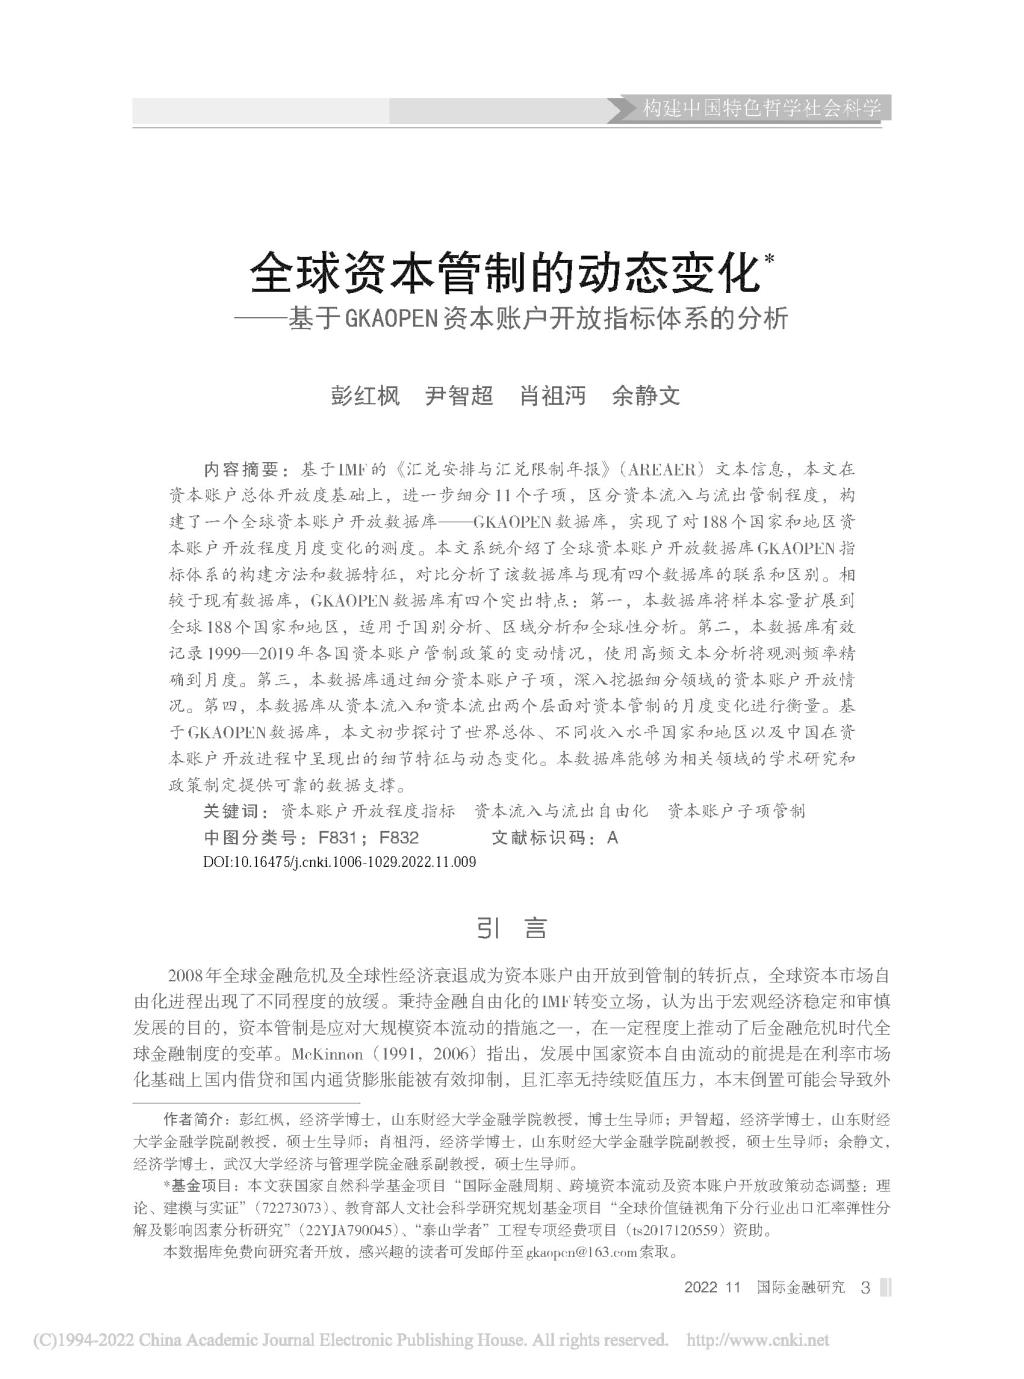 永利网99007770nm彭红枫教授在《国际金融研究》发表学术论文